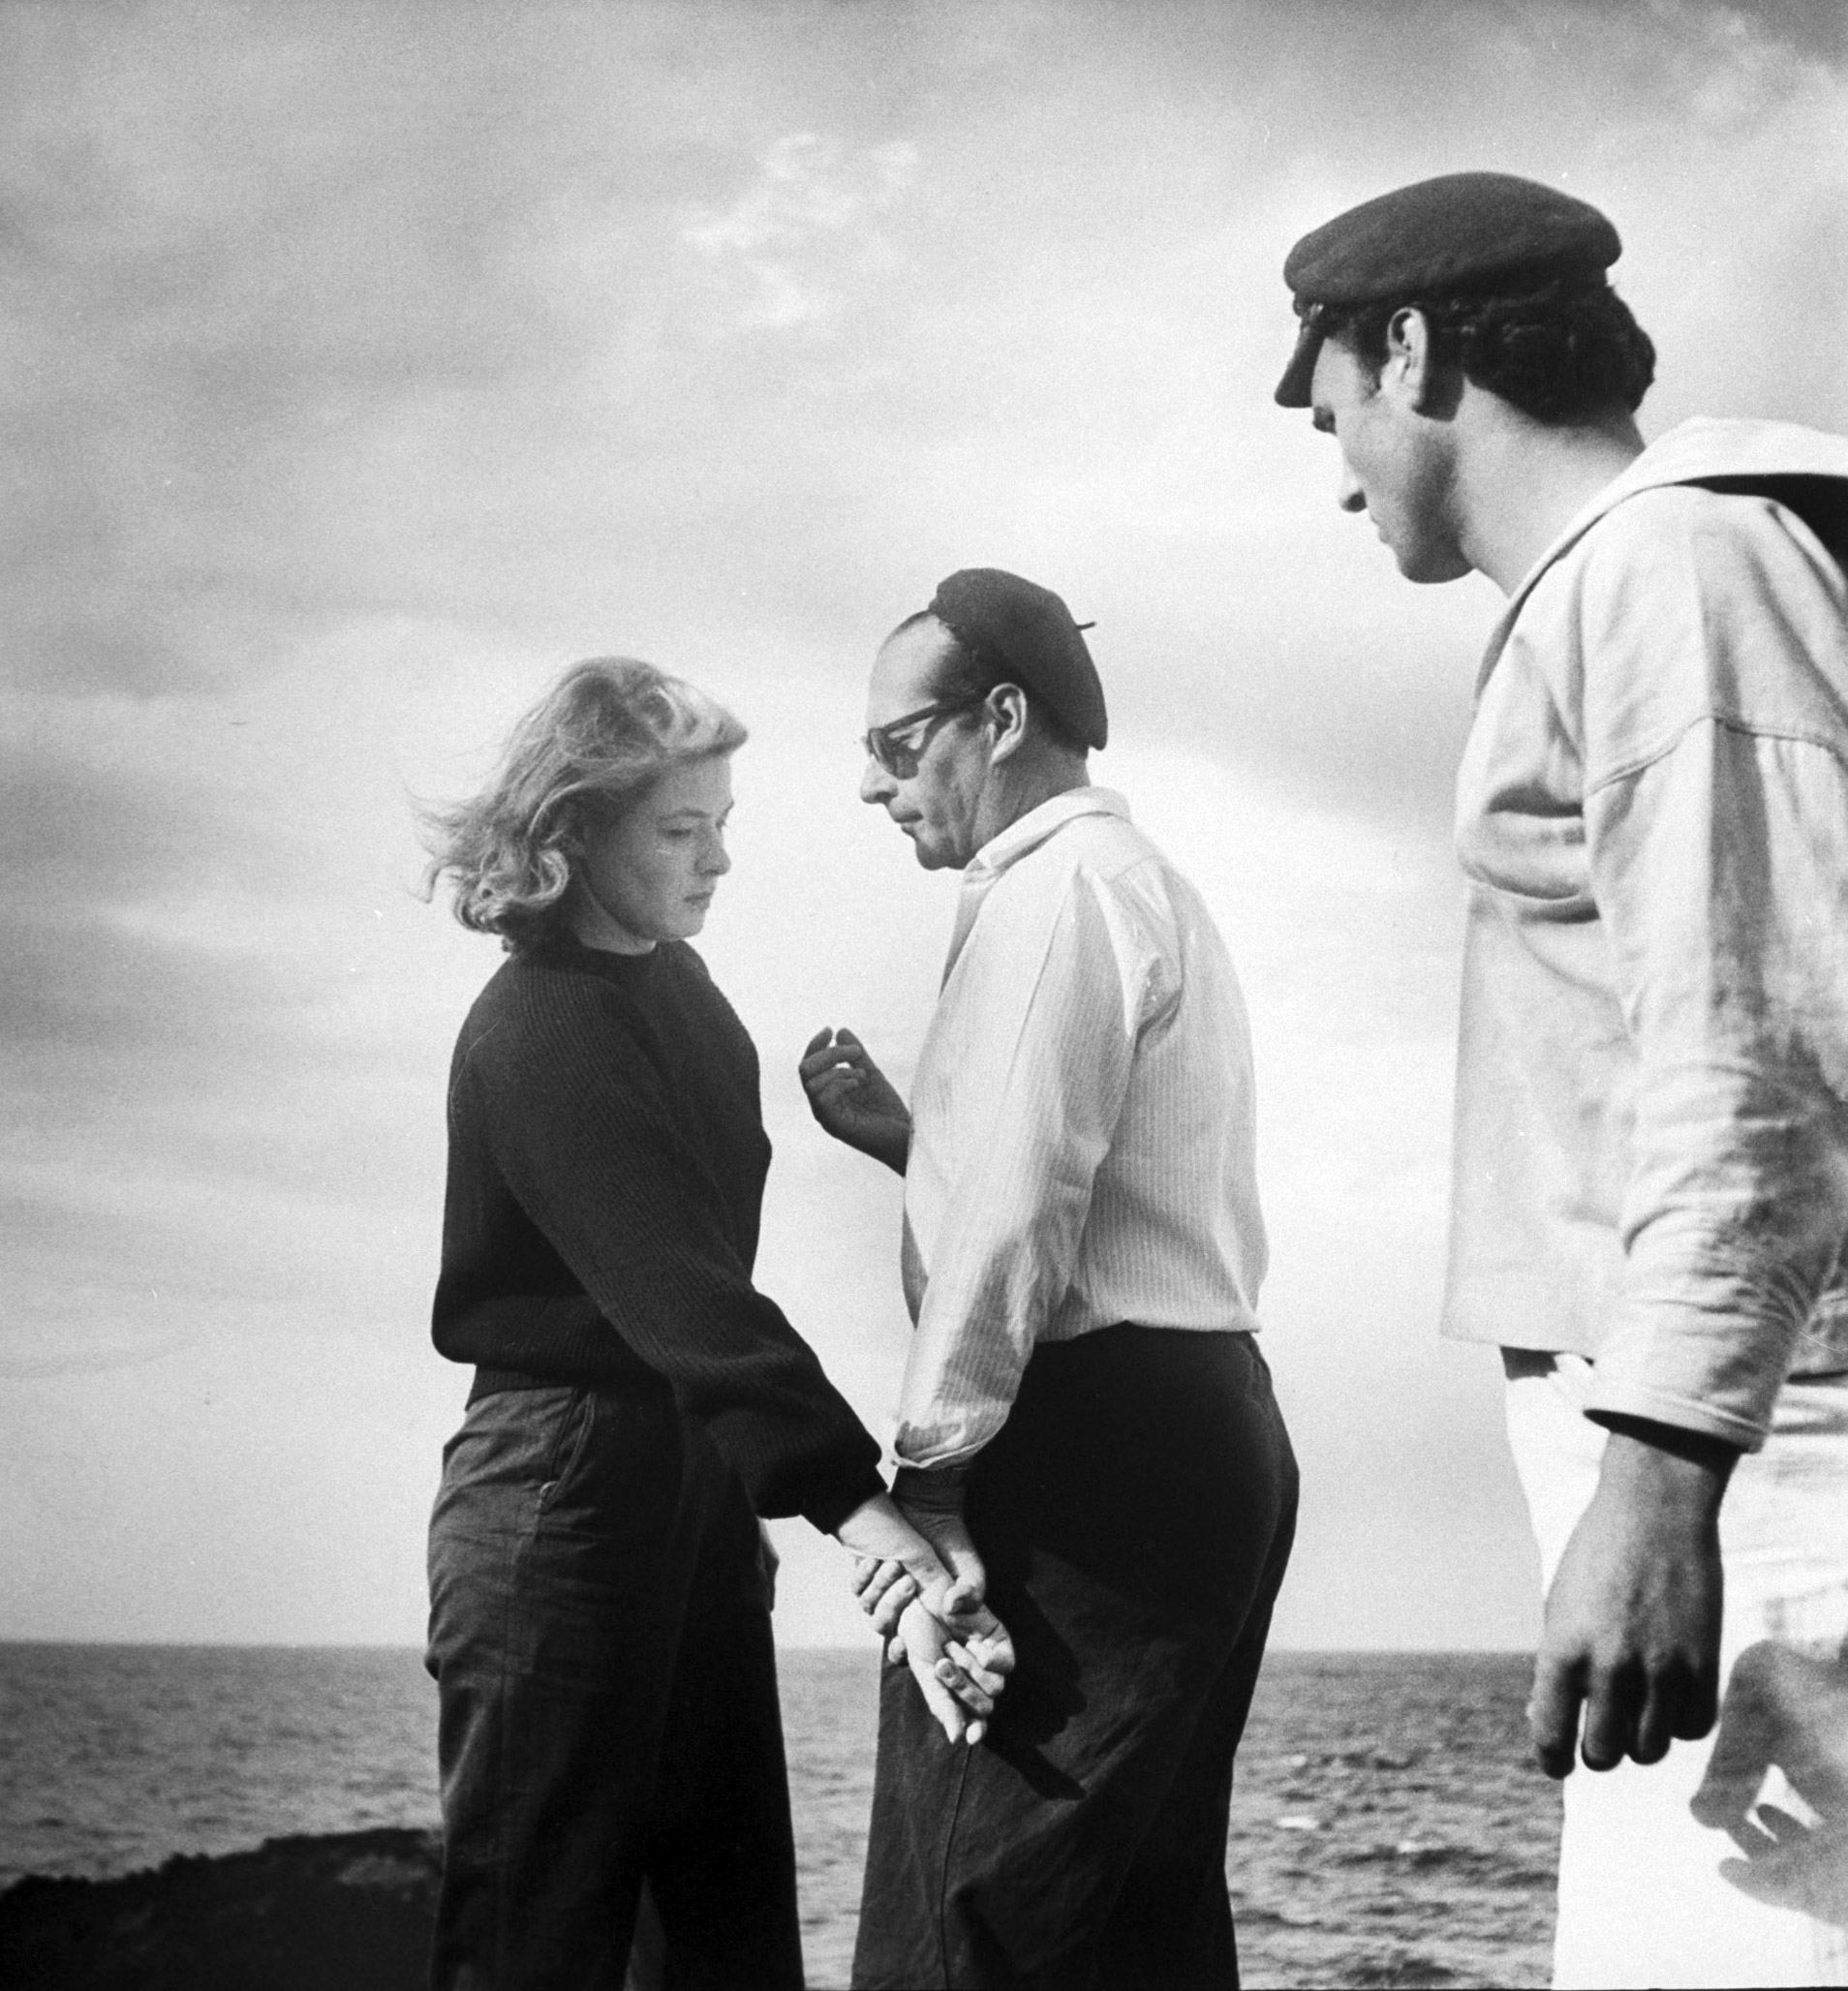 Ingrid Bergman on set for the 1949 film Stromboli